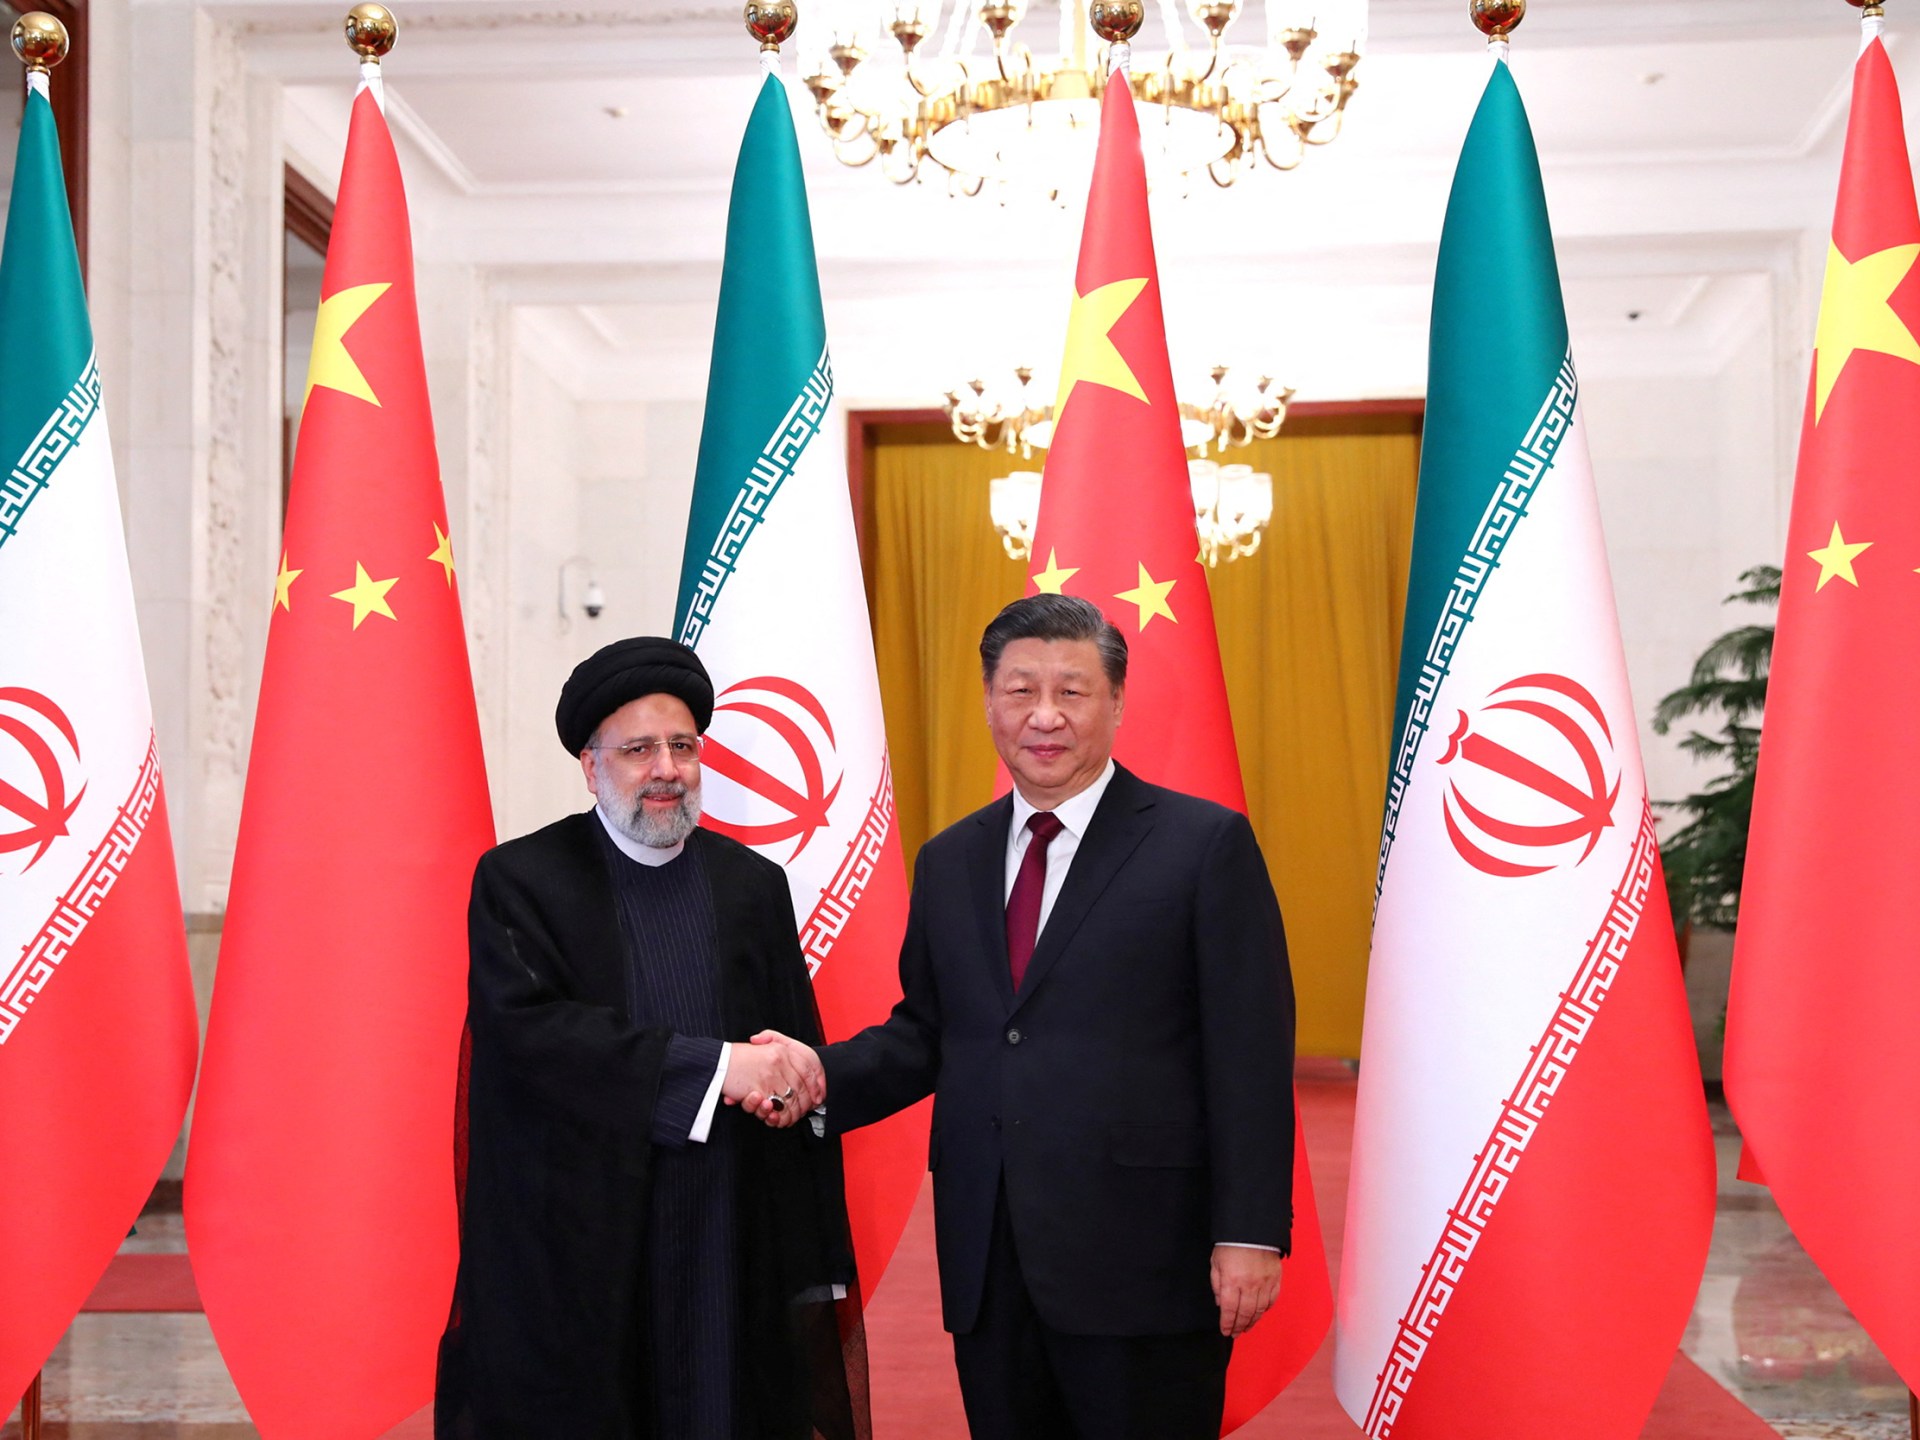 Xi China menyampaikan dukungan untuk Iran selama kunjungan Raisi |  Berita Energi Nuklir